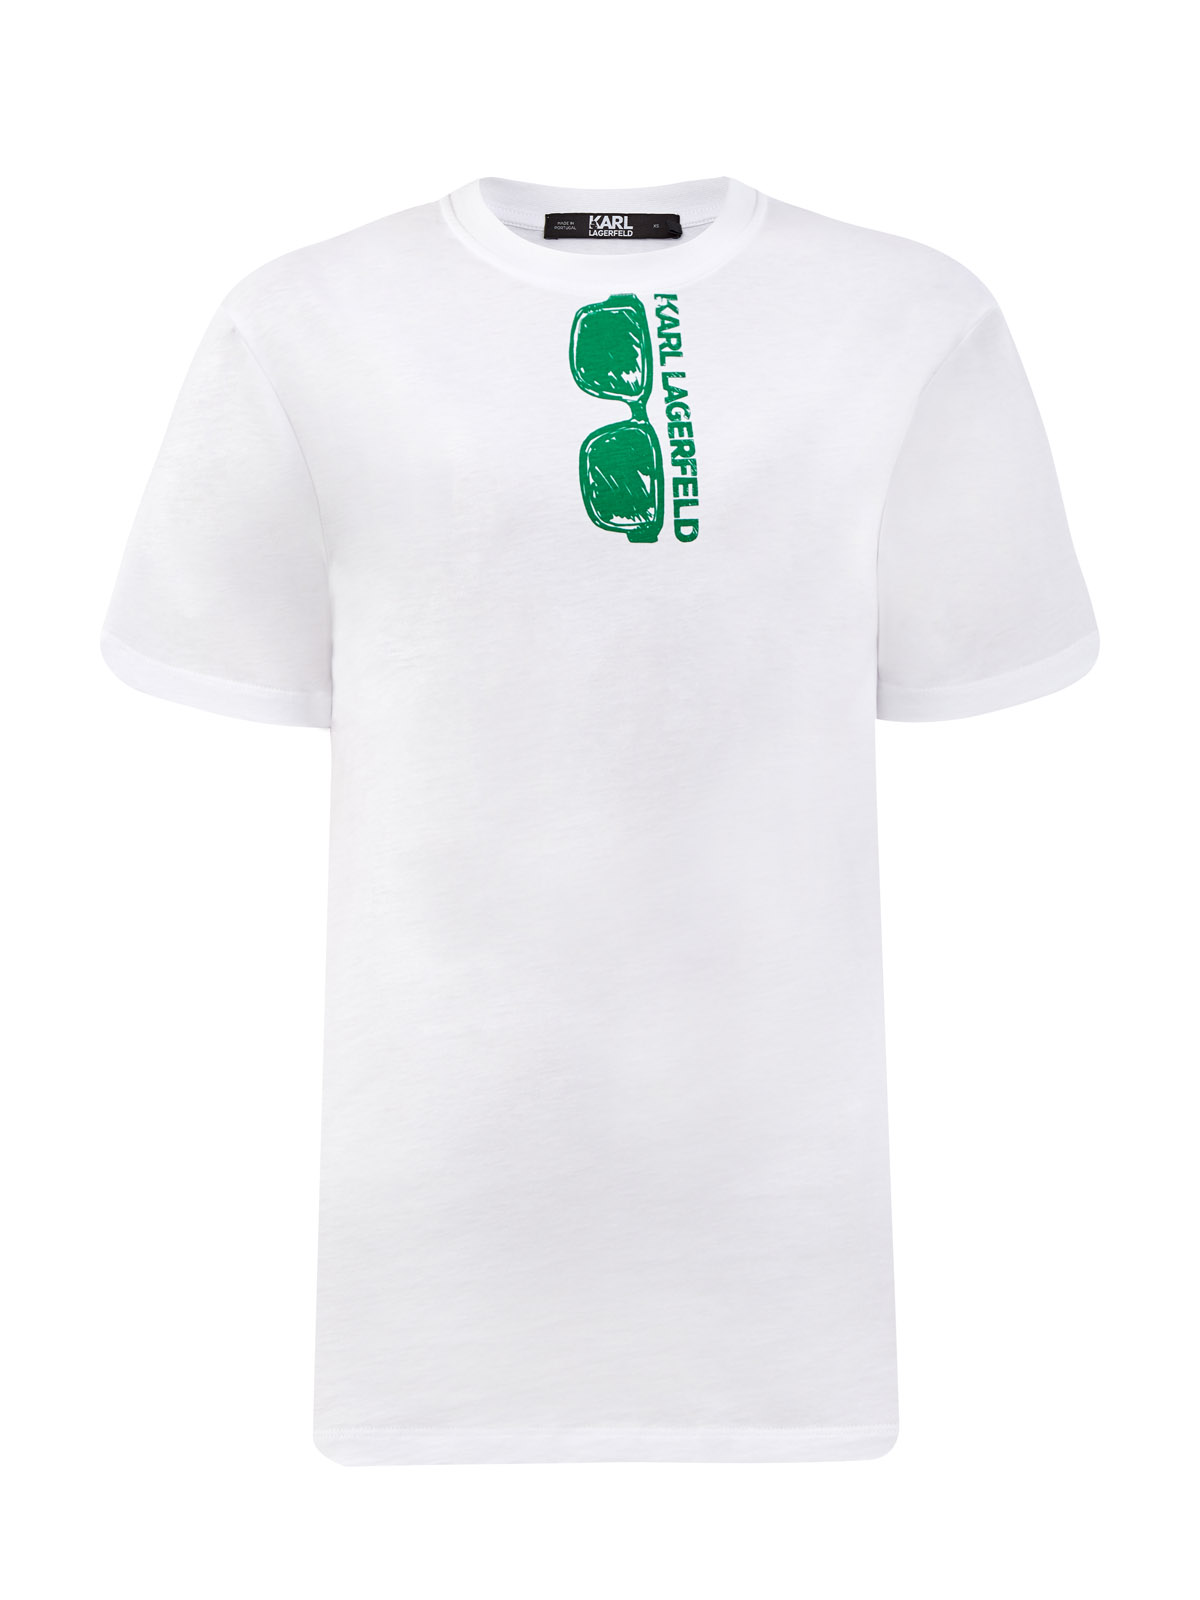 Свободная футболка из хлопка джерси с принтом KARL LAGERFELD, цвет белый, размер XS;S;M;L;XL - фото 1